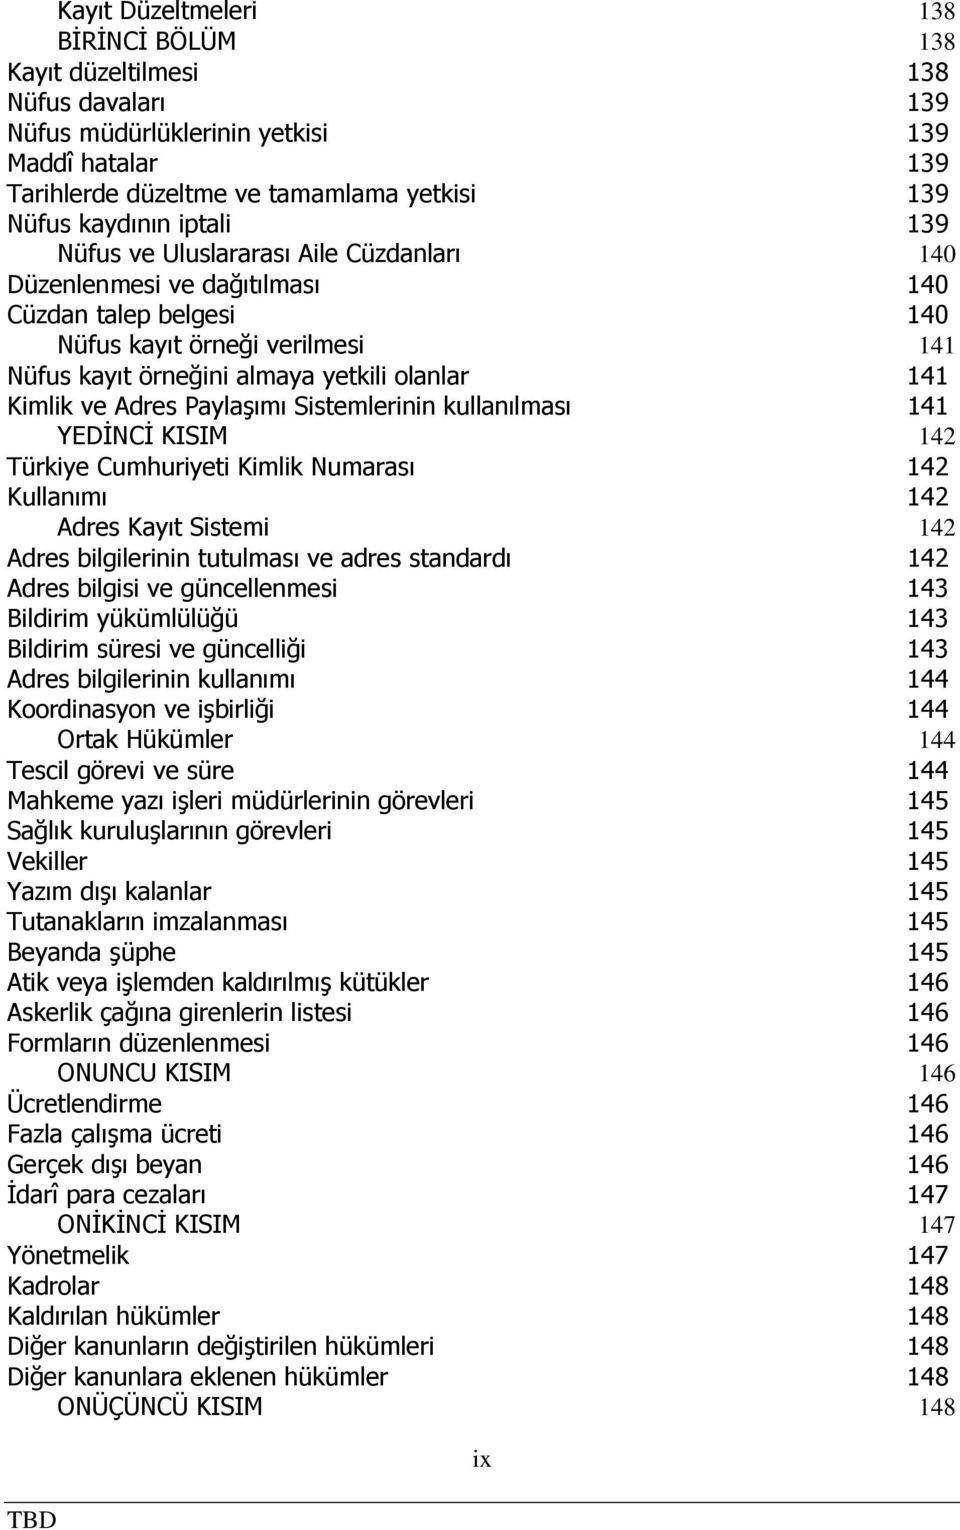 ve Adres Paylaşımı Sistemlerinin kullanılması 141 YEDİNCİ KISIM 142 Türkiye Cumhuriyeti Kimlik Numarası 142 Kullanımı 142 Adres Kayıt Sistemi 142 Adres bilgilerinin tutulması ve adres standardı 142